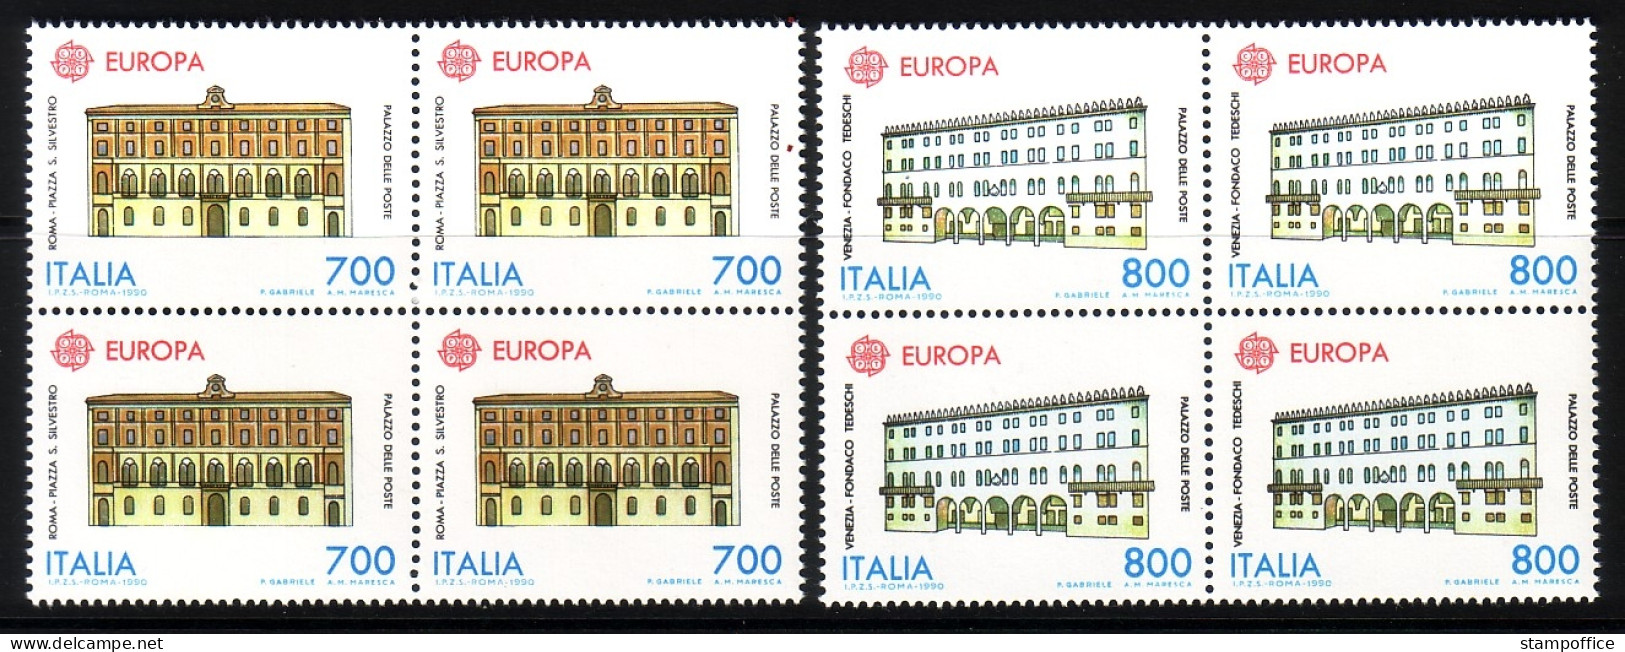 ITALIEN MI-NR. 2150-2151 POSTFRISCH(MINT) 4er BLOCK EUROPA 1990 POSTALISCHE EINRICHTUNGEN - 1990